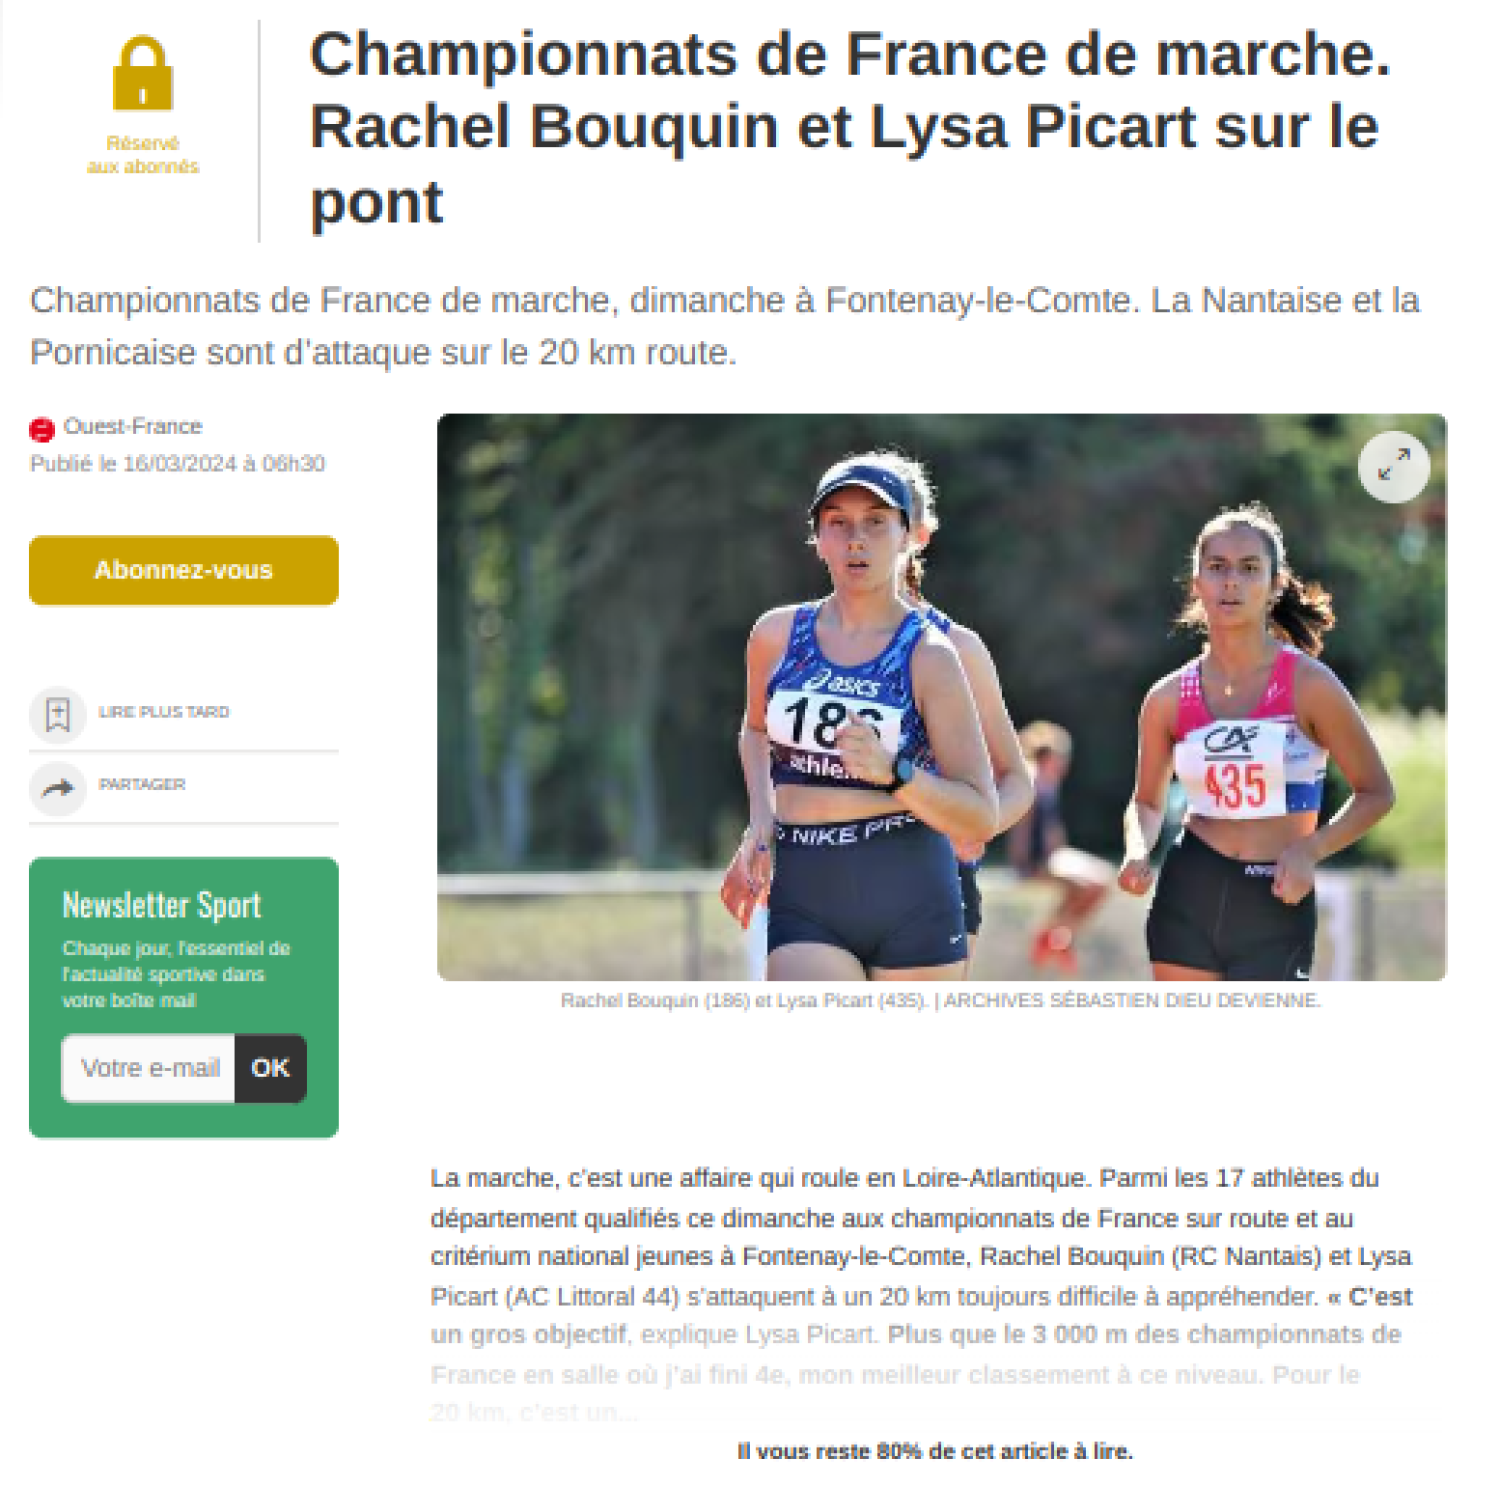 Ouest France 16/03/2024 : Championnats de France de marche. Rachel Bouquin et Lysa Picart sur le pont